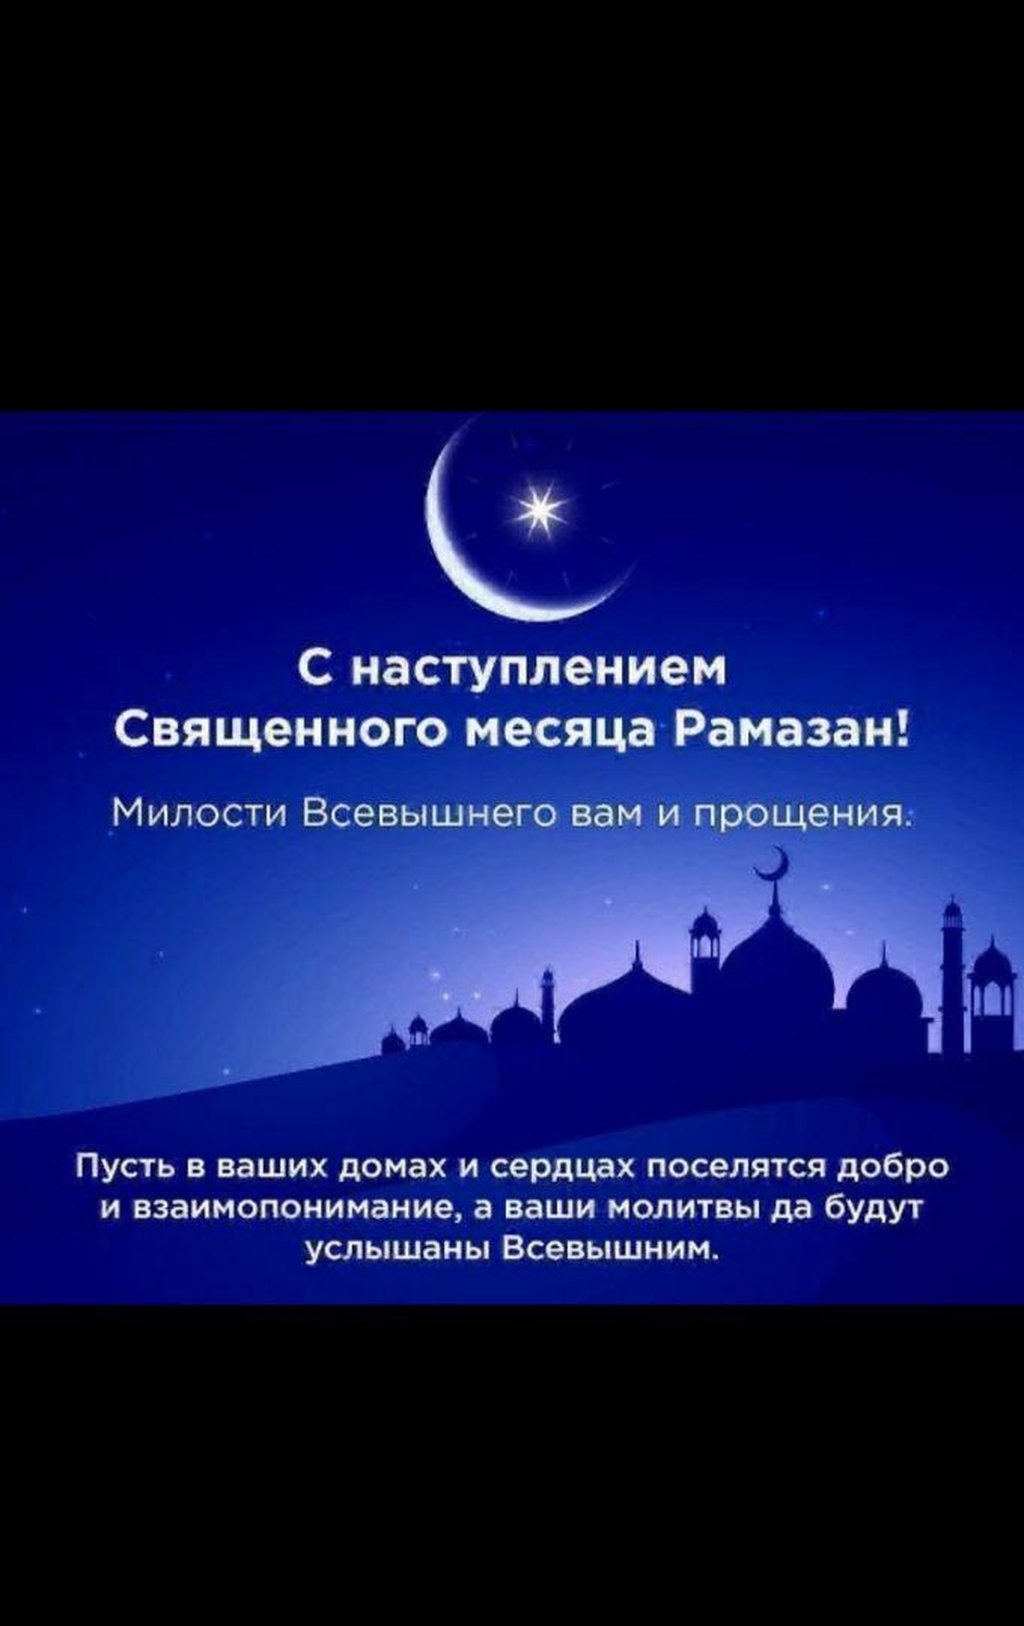 Поздравляю с месяцем рамадан своими словами. Месяц Рамадан. С наступлением песяц Рамазан. Месяц Рамазан. Священный месяц Рамазан.